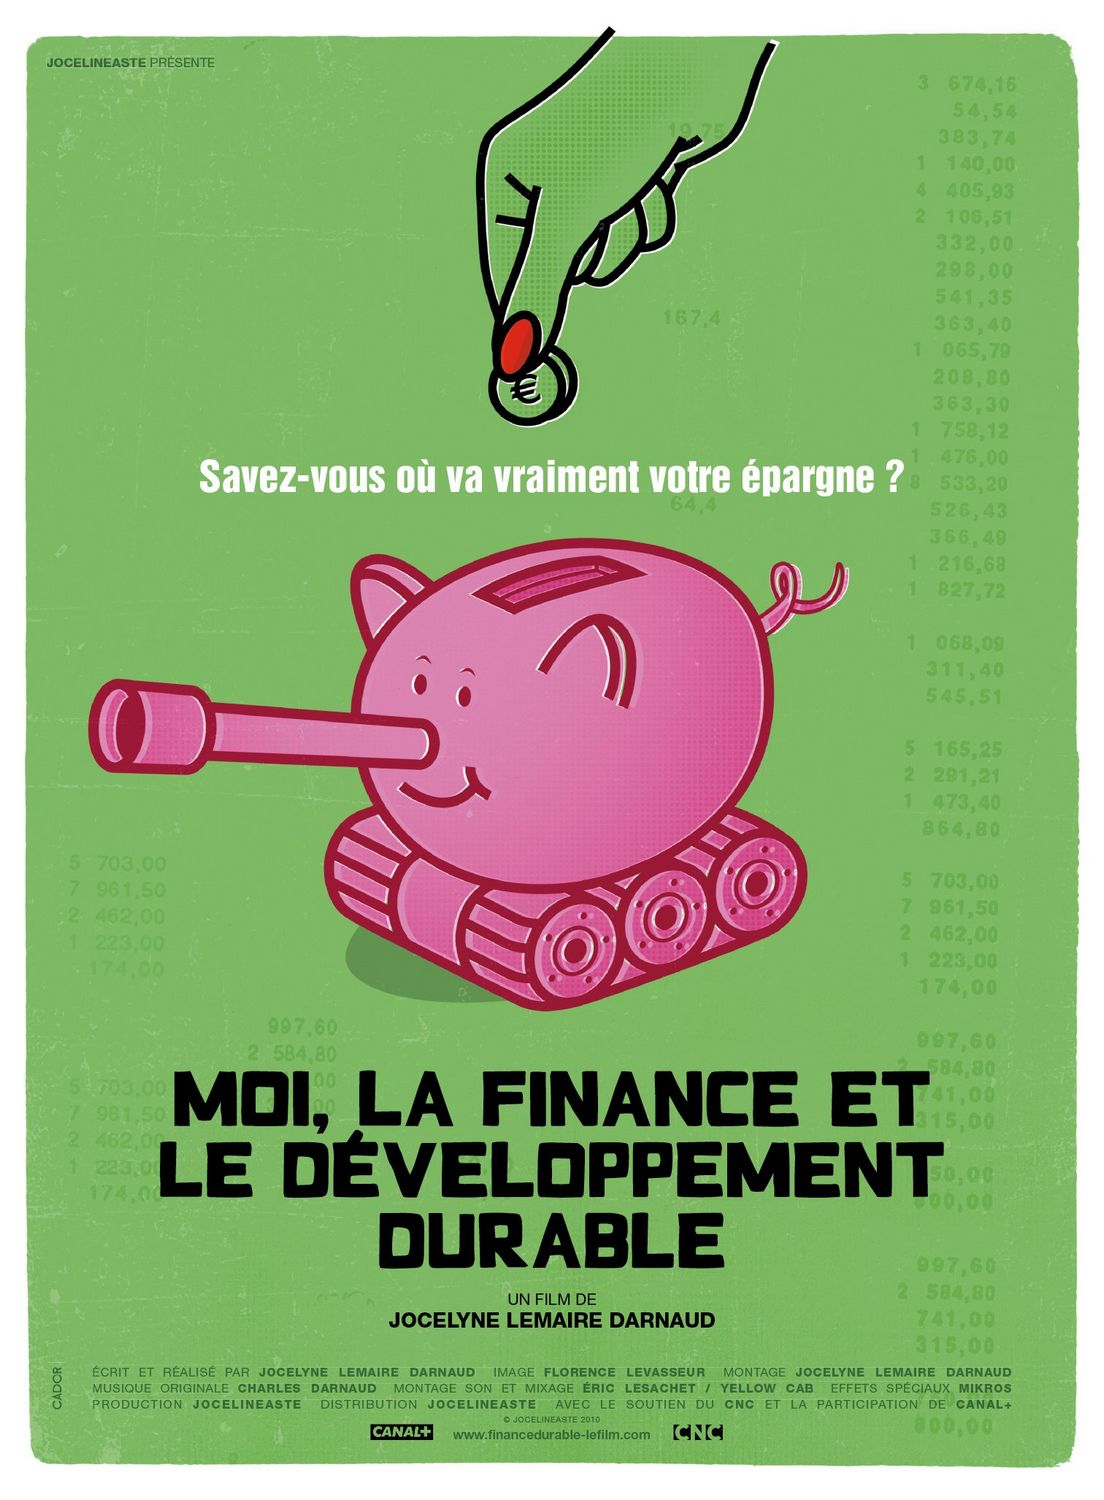 Extra Large Movie Poster Image for Moi, la finance et le développement durable 